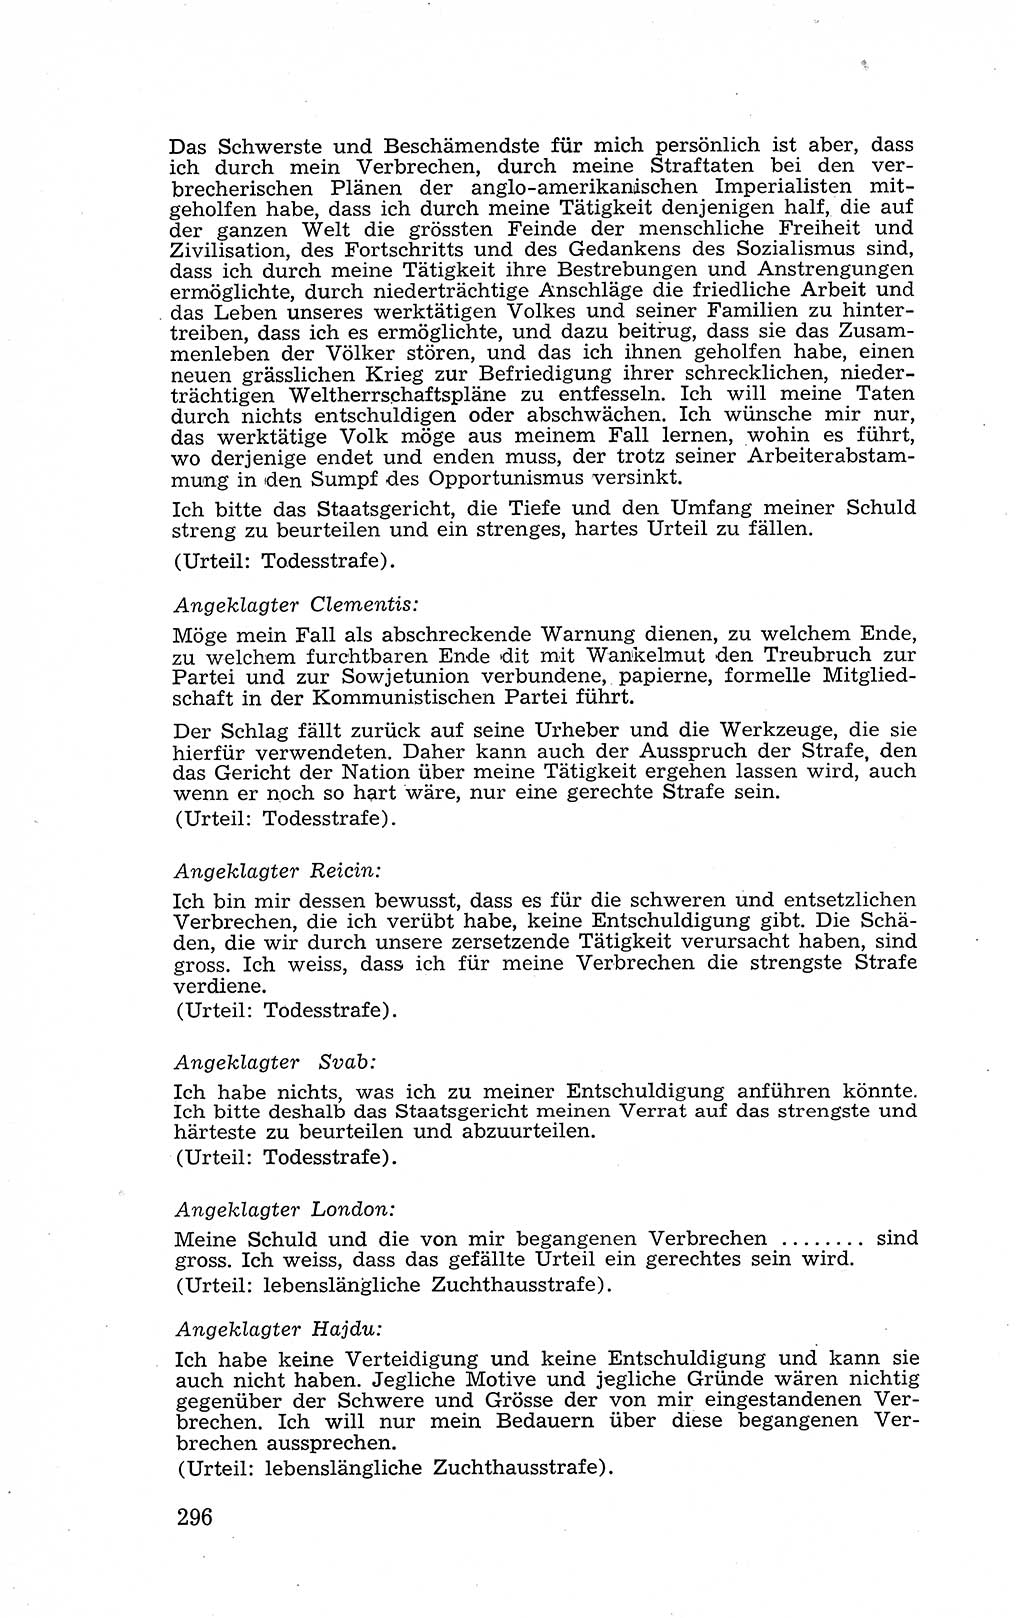 Recht in Fesseln, Dokumente, Internationale Juristen-Kommission [Bundesrepublik Deutschland (BRD)] 1955, Seite 296 (R. Dok. IJK BRD 1955, S. 296)